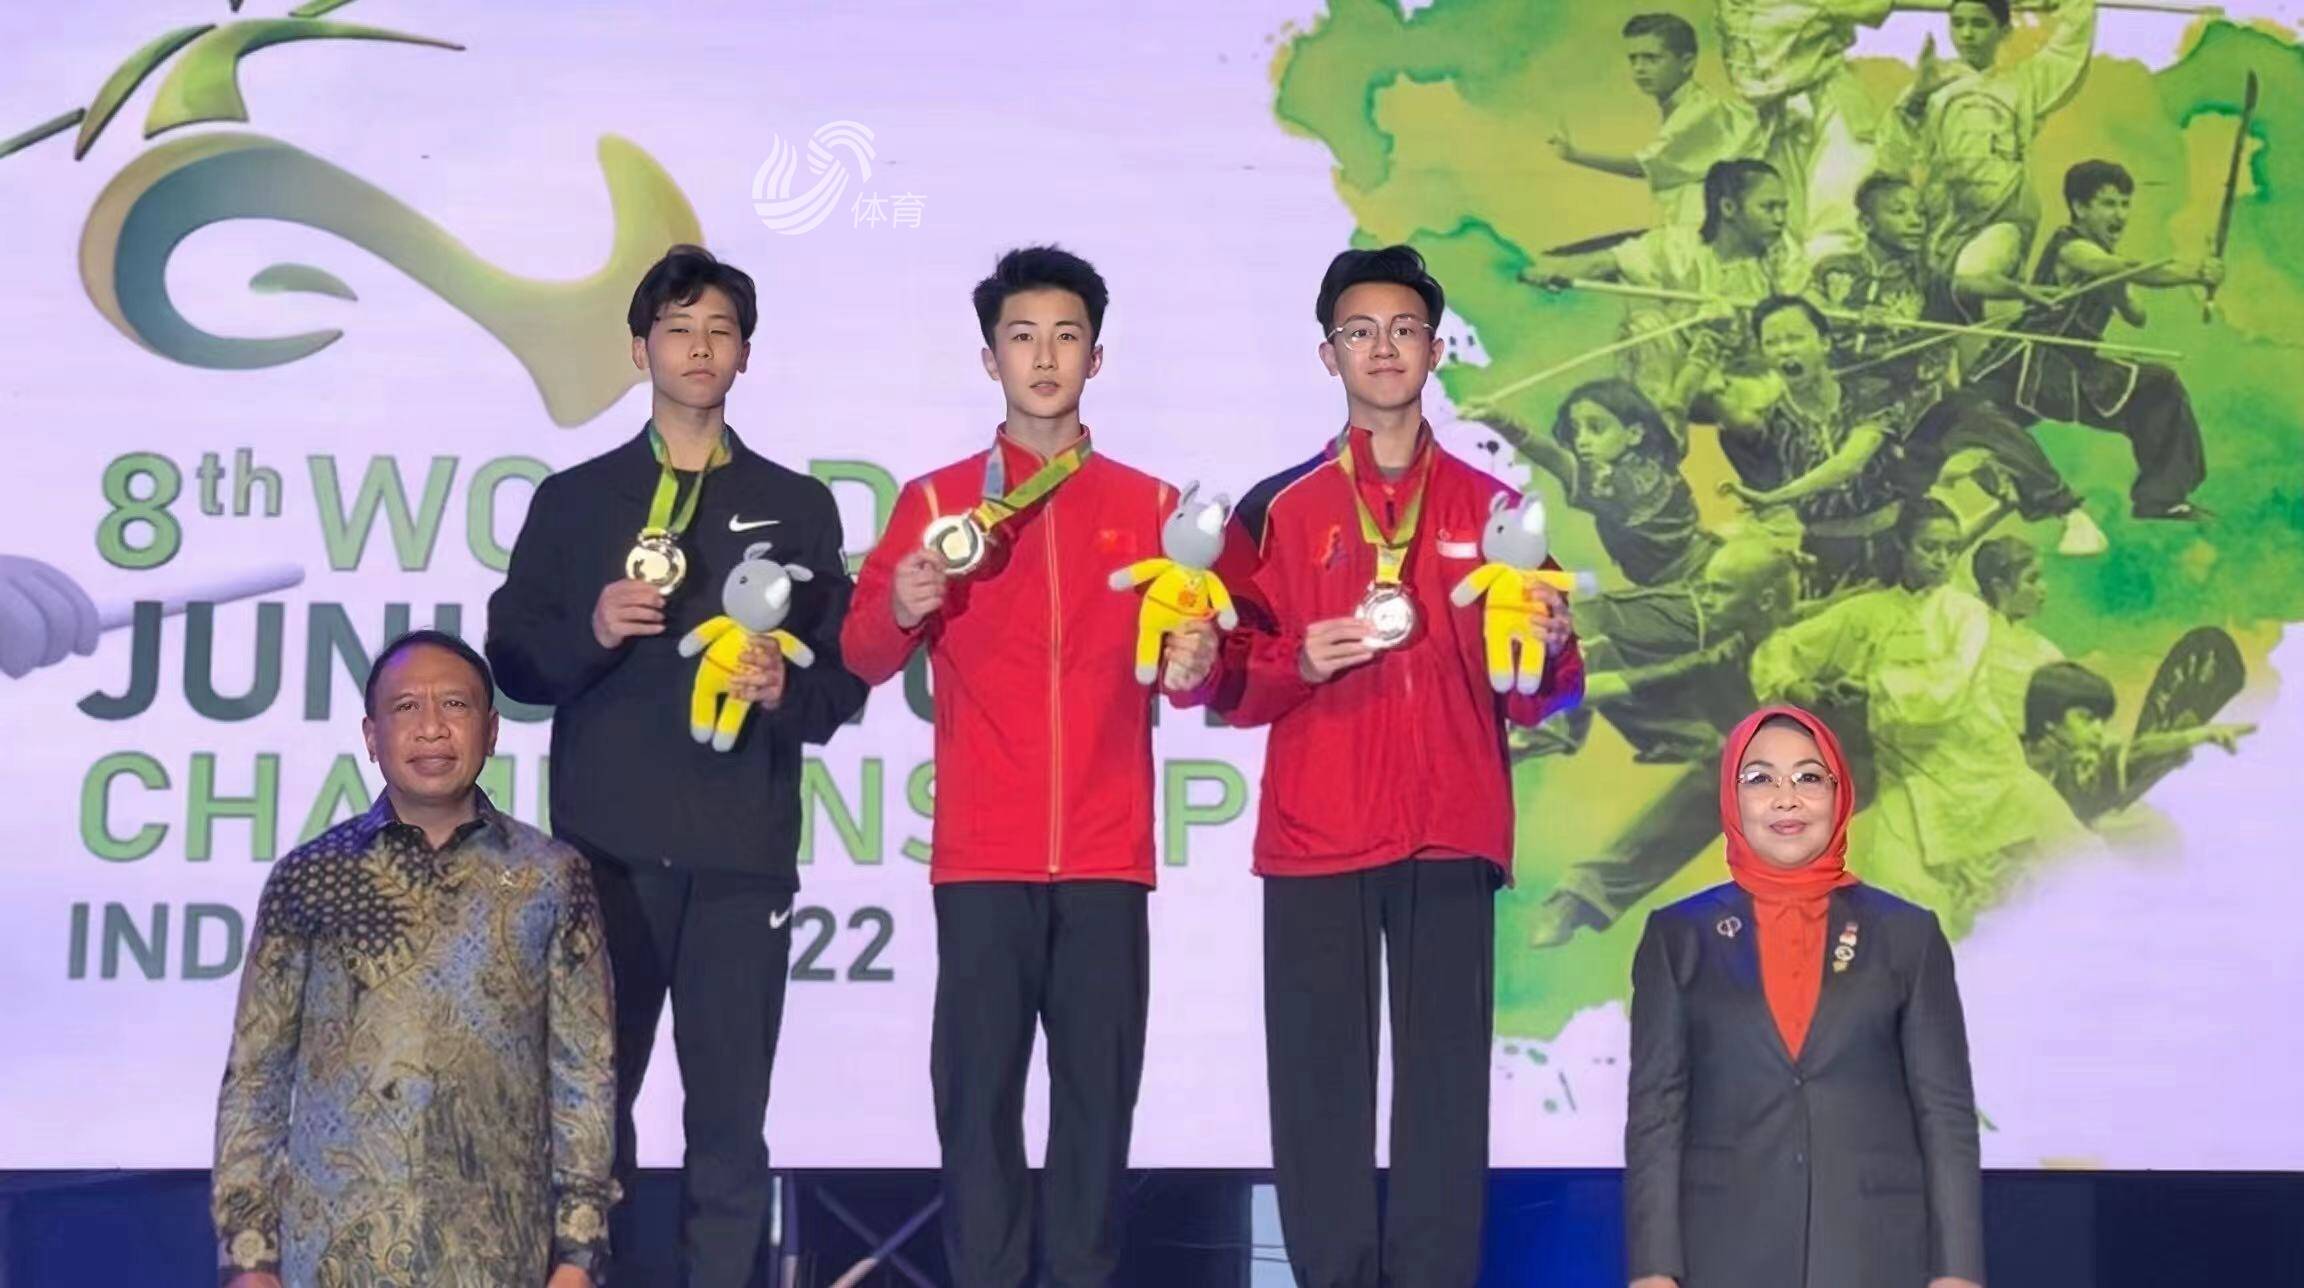 世界青少年武术锦标赛山东选手李嘉泰夺两金